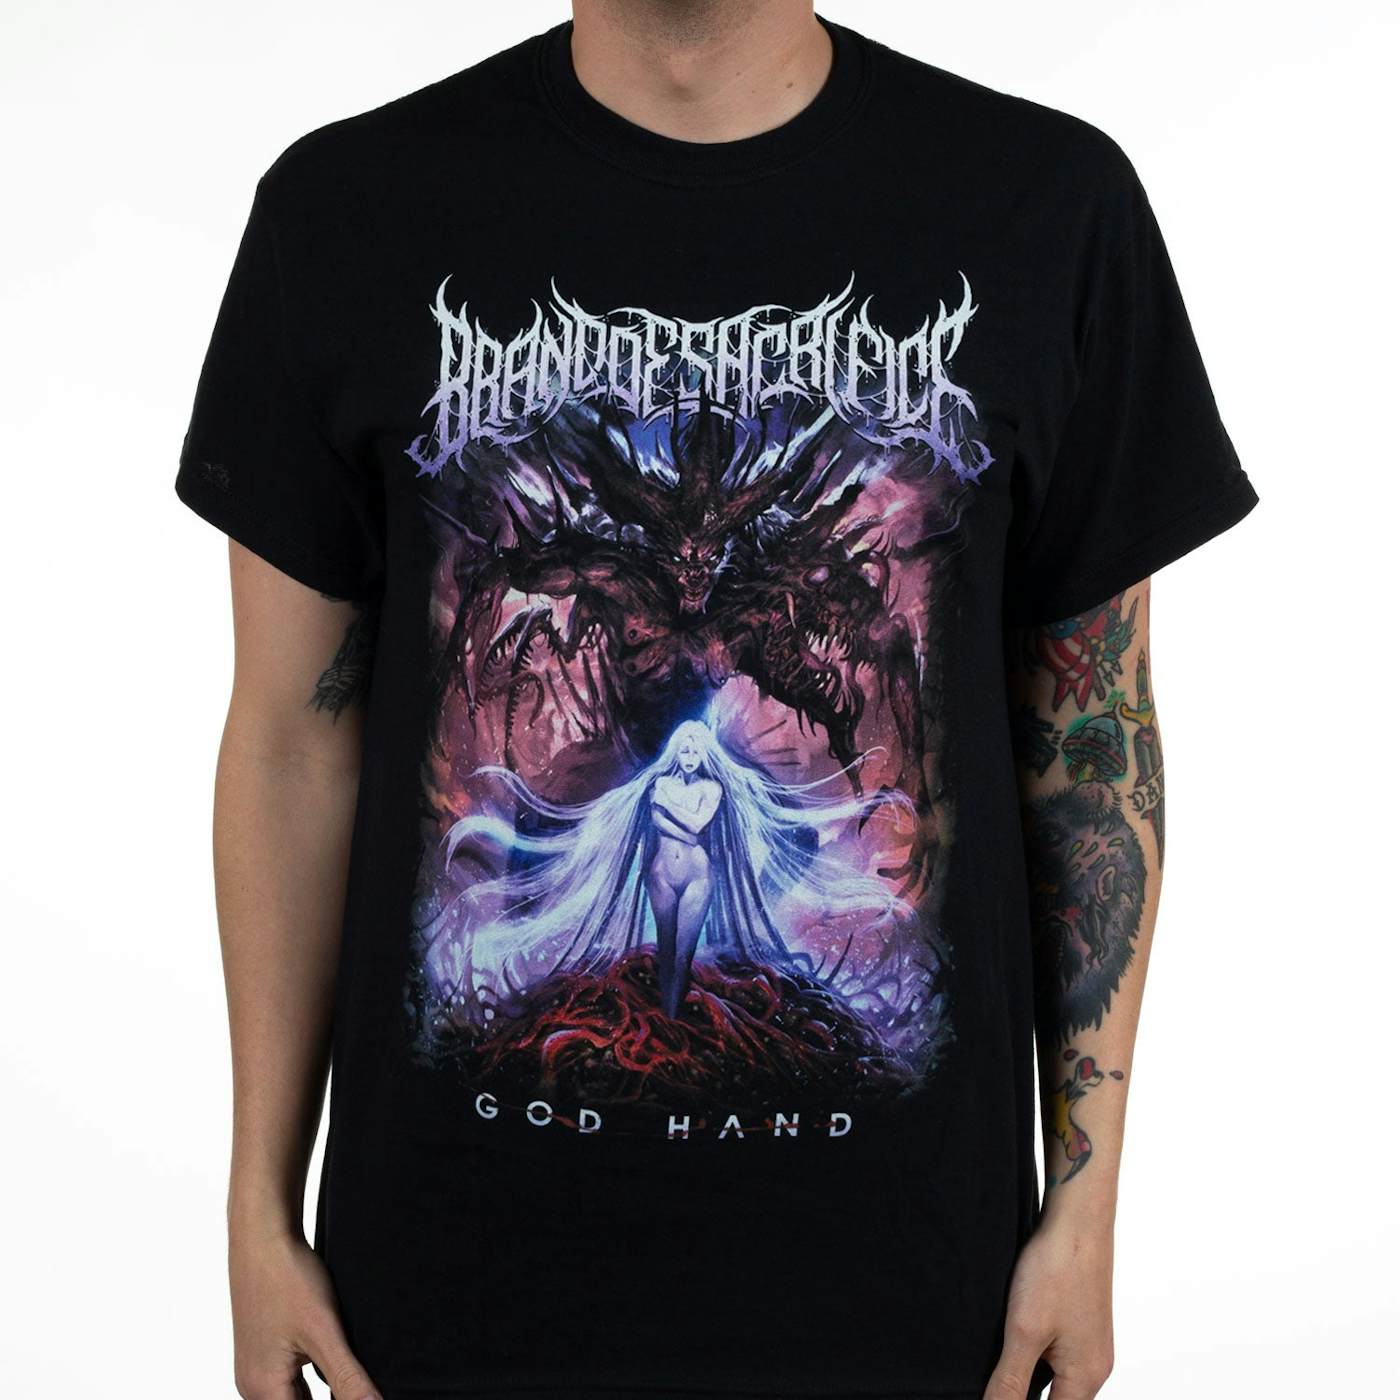 Brand of Sacrifice "Godhand" T-Shirt